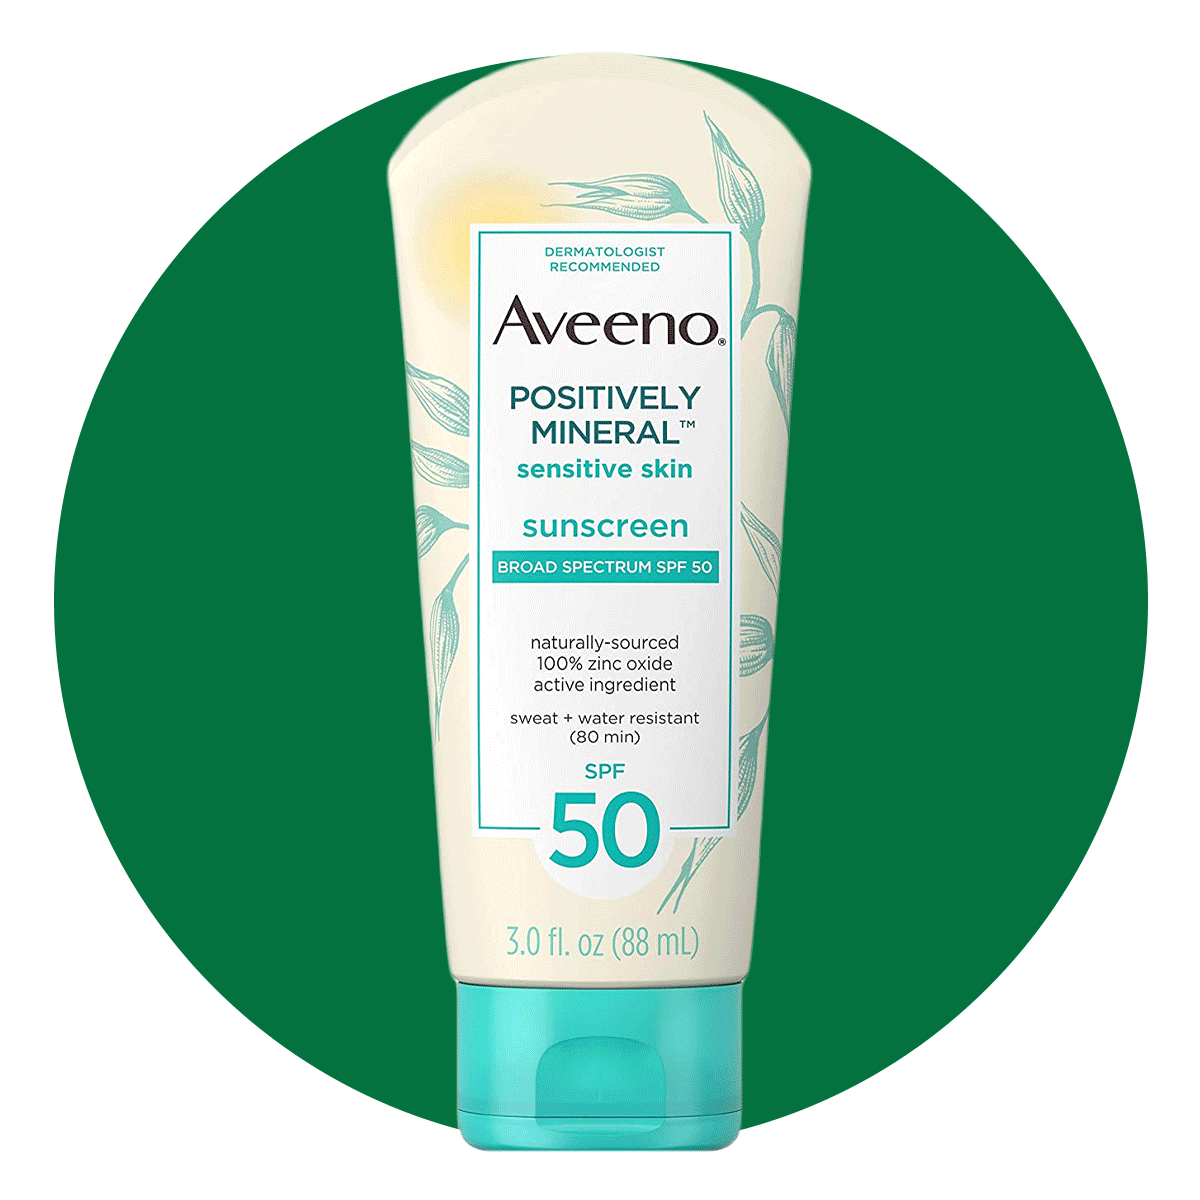 5 Hormone Free Sunscreens Ft Ecomm Via Amazon.com